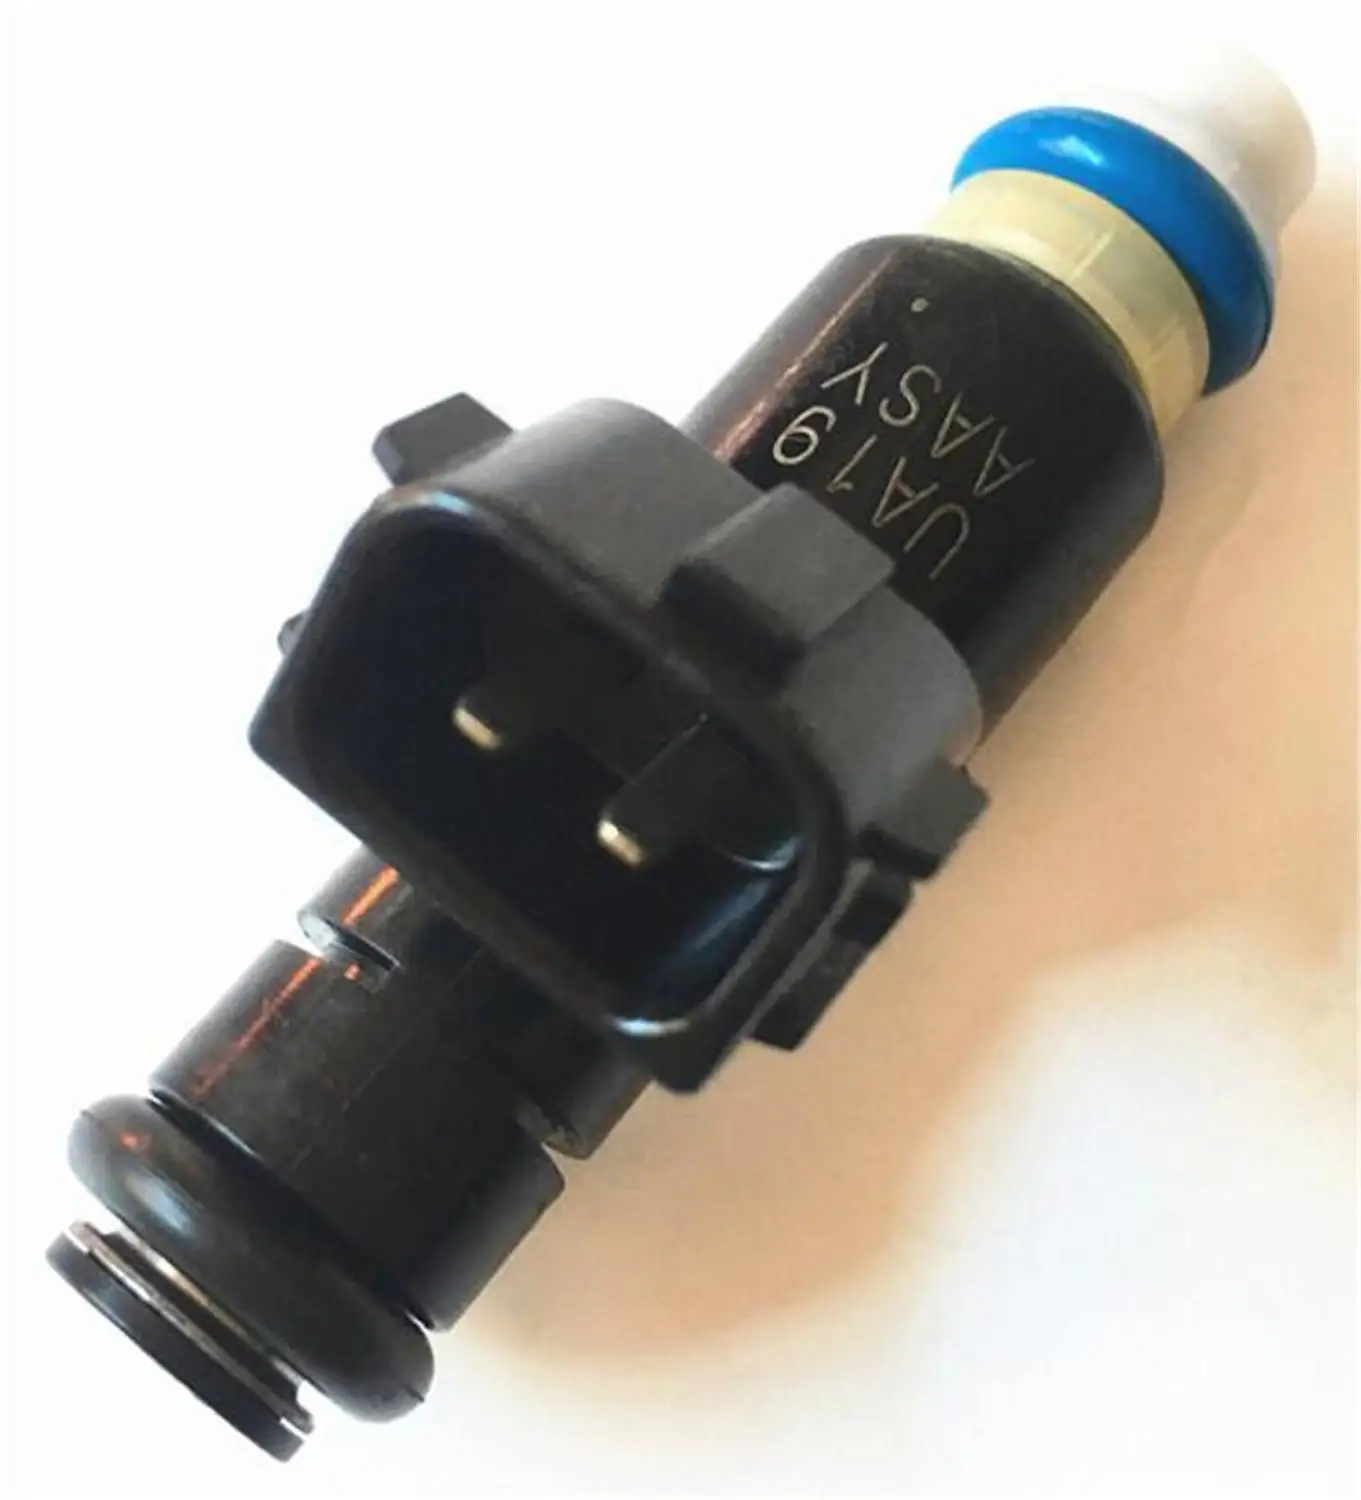 

4pcs Original Fuel Injectors 16450RNAA01 16450-RNA-A01 Auto Fuel Nozzles for Honda Civic 1.8L 16V Petrol 6 Holes